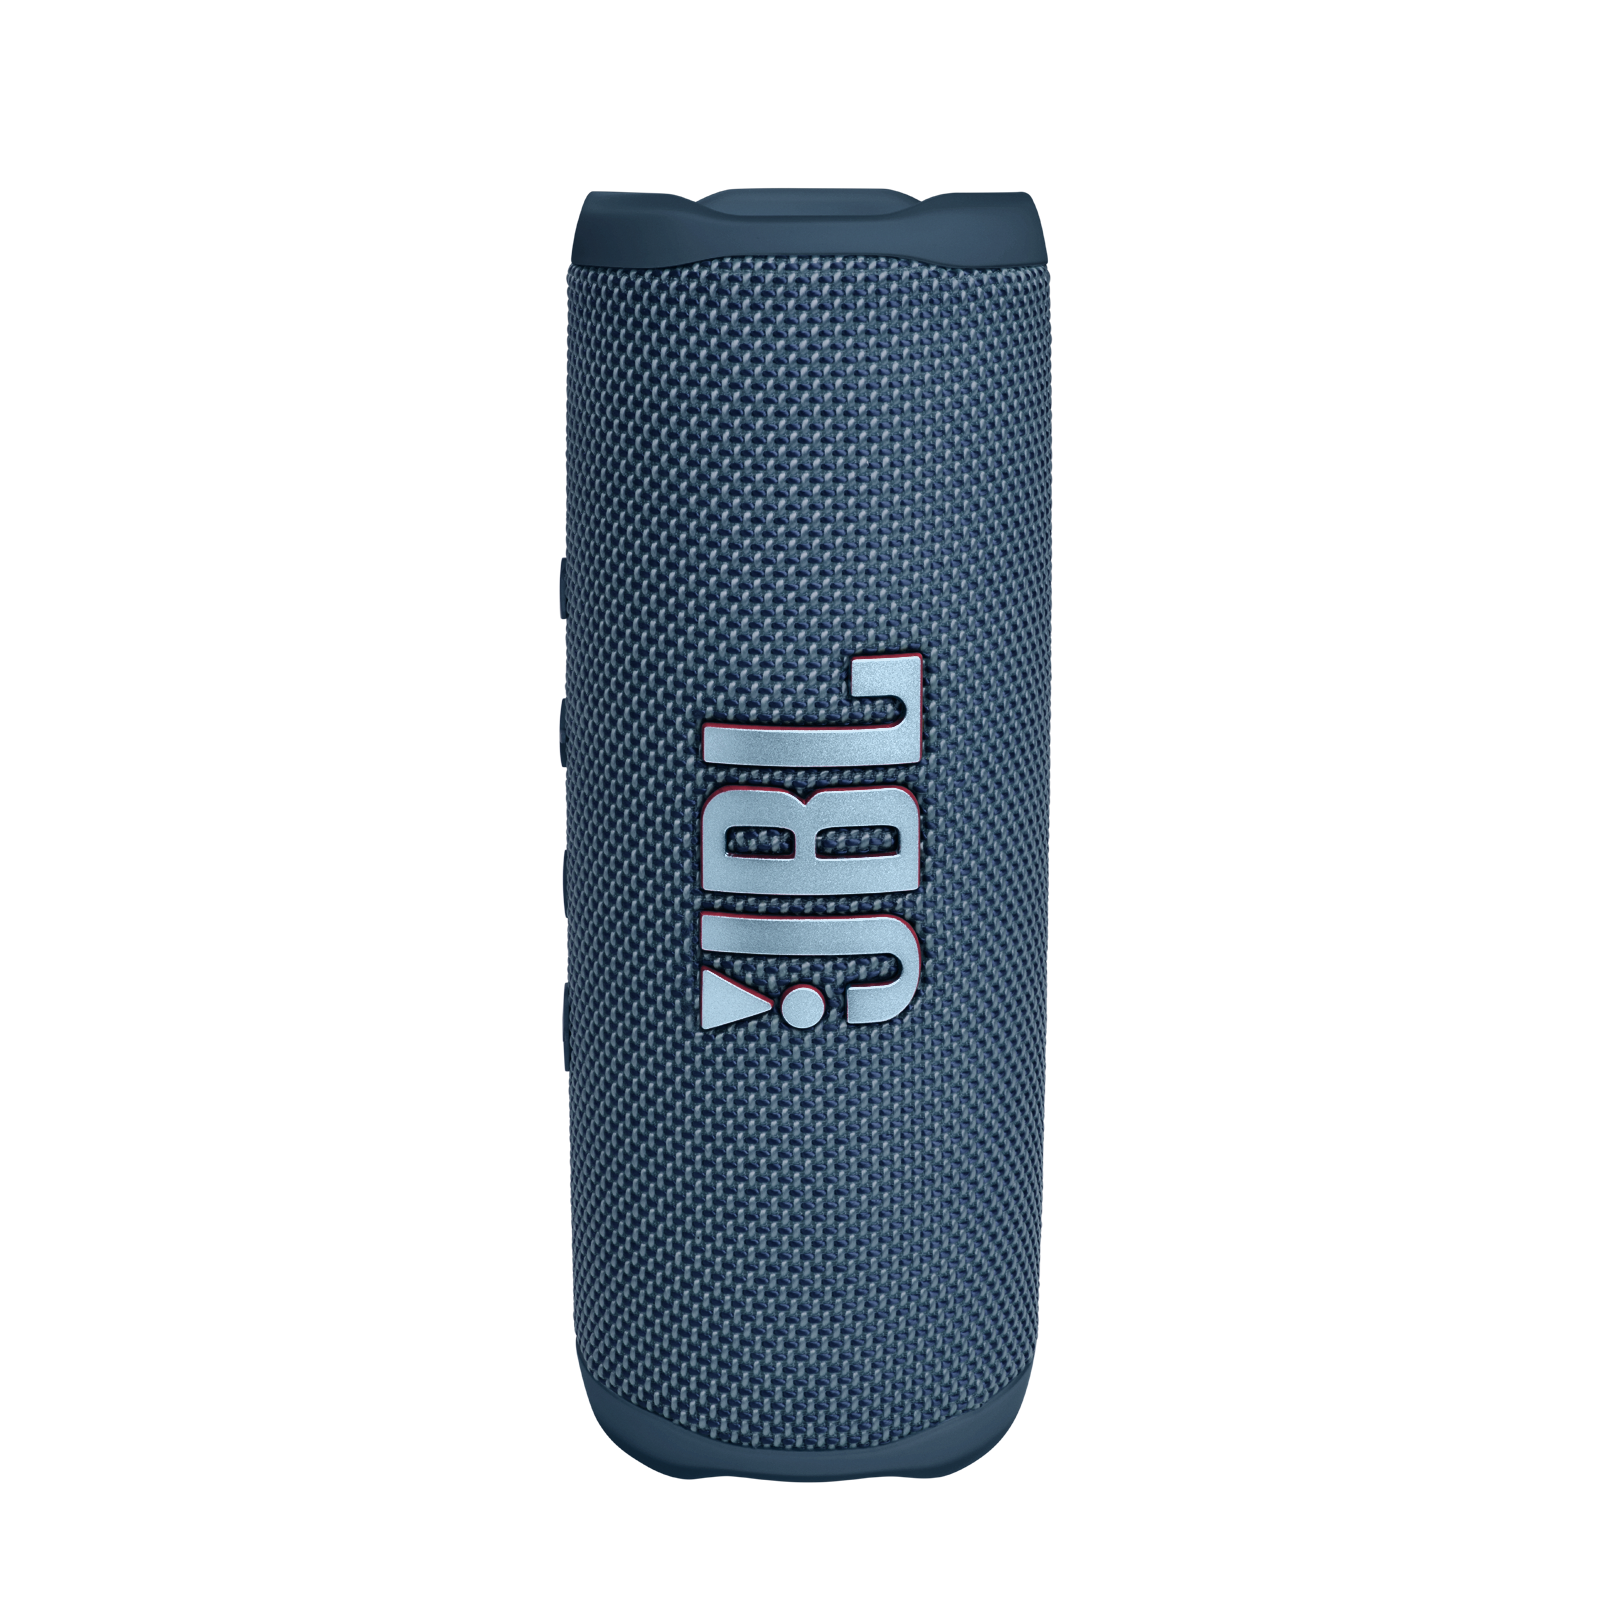 人気SALE得価 JBL FLIP6 防水Bluetoothスピーカー ブラック 新品未使用品 vl9GP-m87019997995 